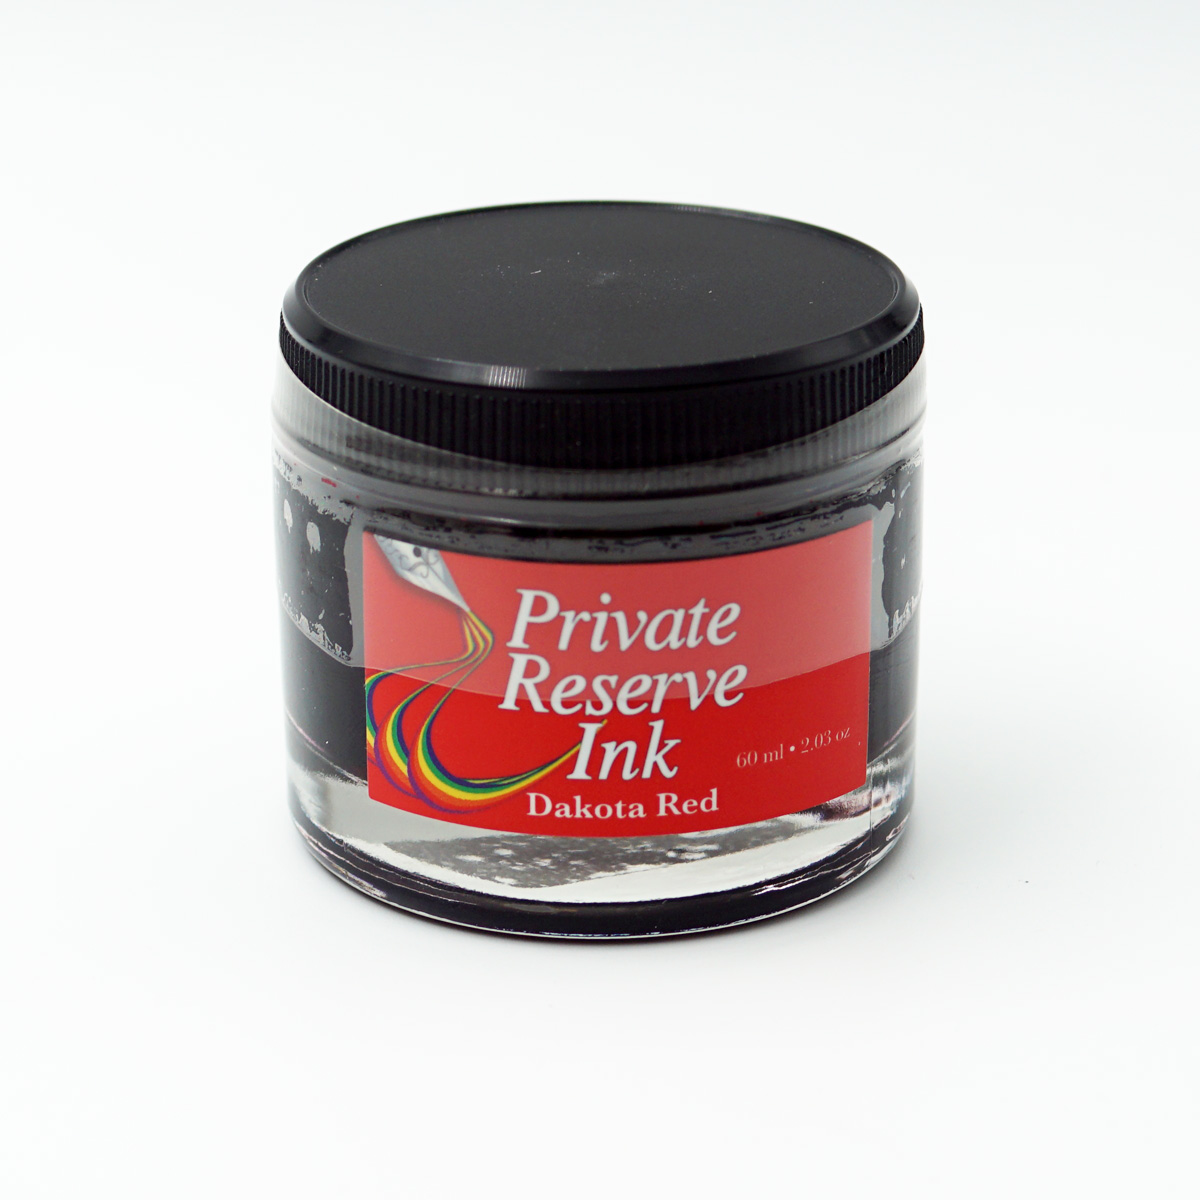 Private Reserve Ink PR17008 60ml Dakota Red Color Ink Bottle SKU70786